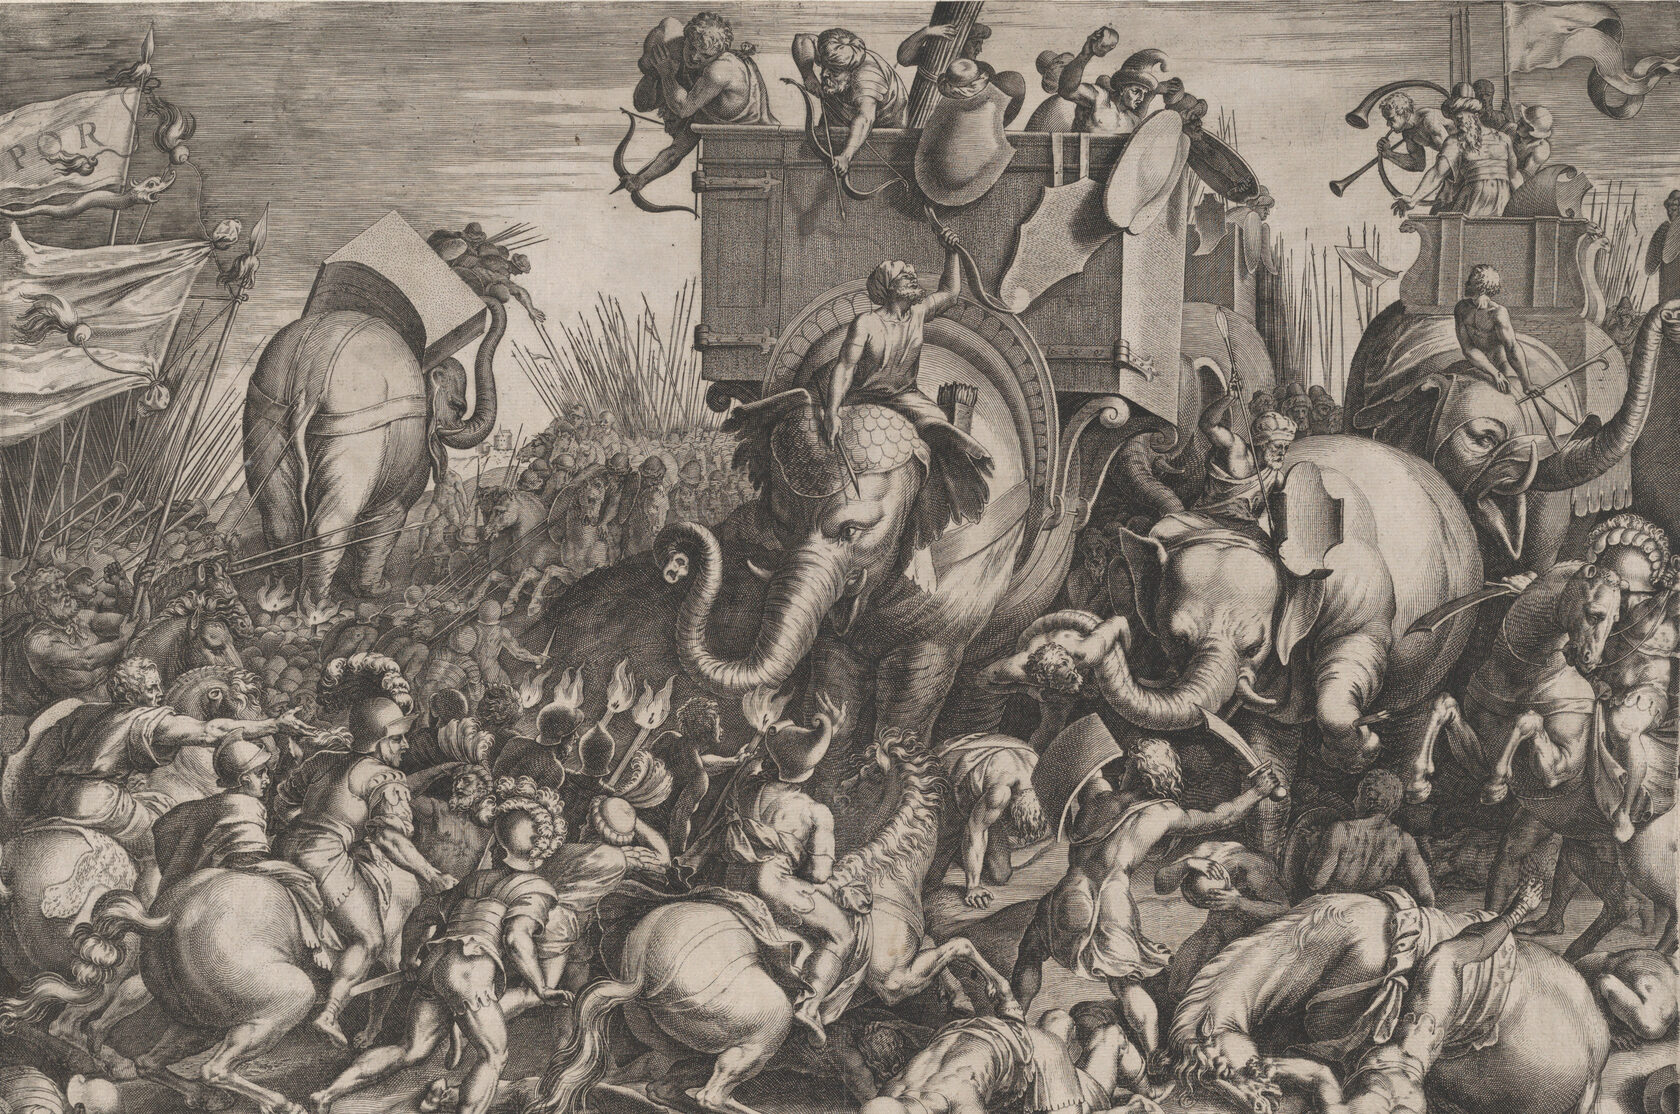  «Битва при Заме», К. Корт. 1567 г.